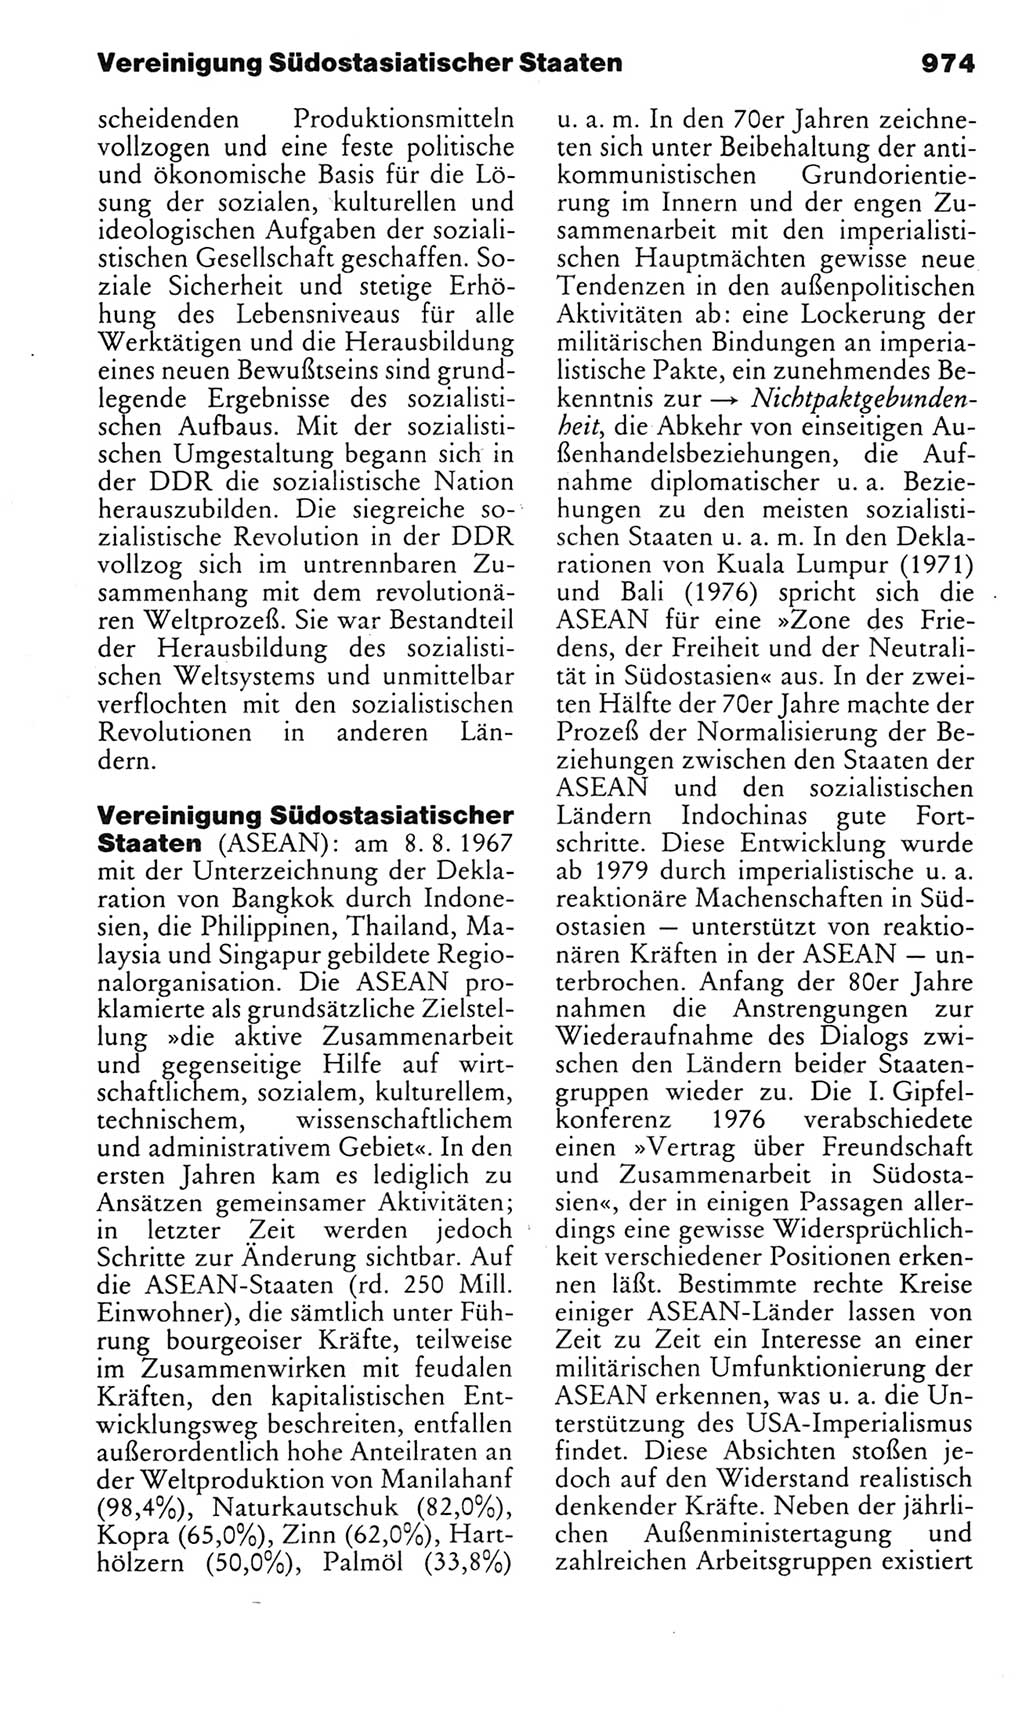 Kleines politisches Wörterbuch [Deutsche Demokratische Republik (DDR)] 1983, Seite 974 (Kl. pol. Wb. DDR 1983, S. 974)